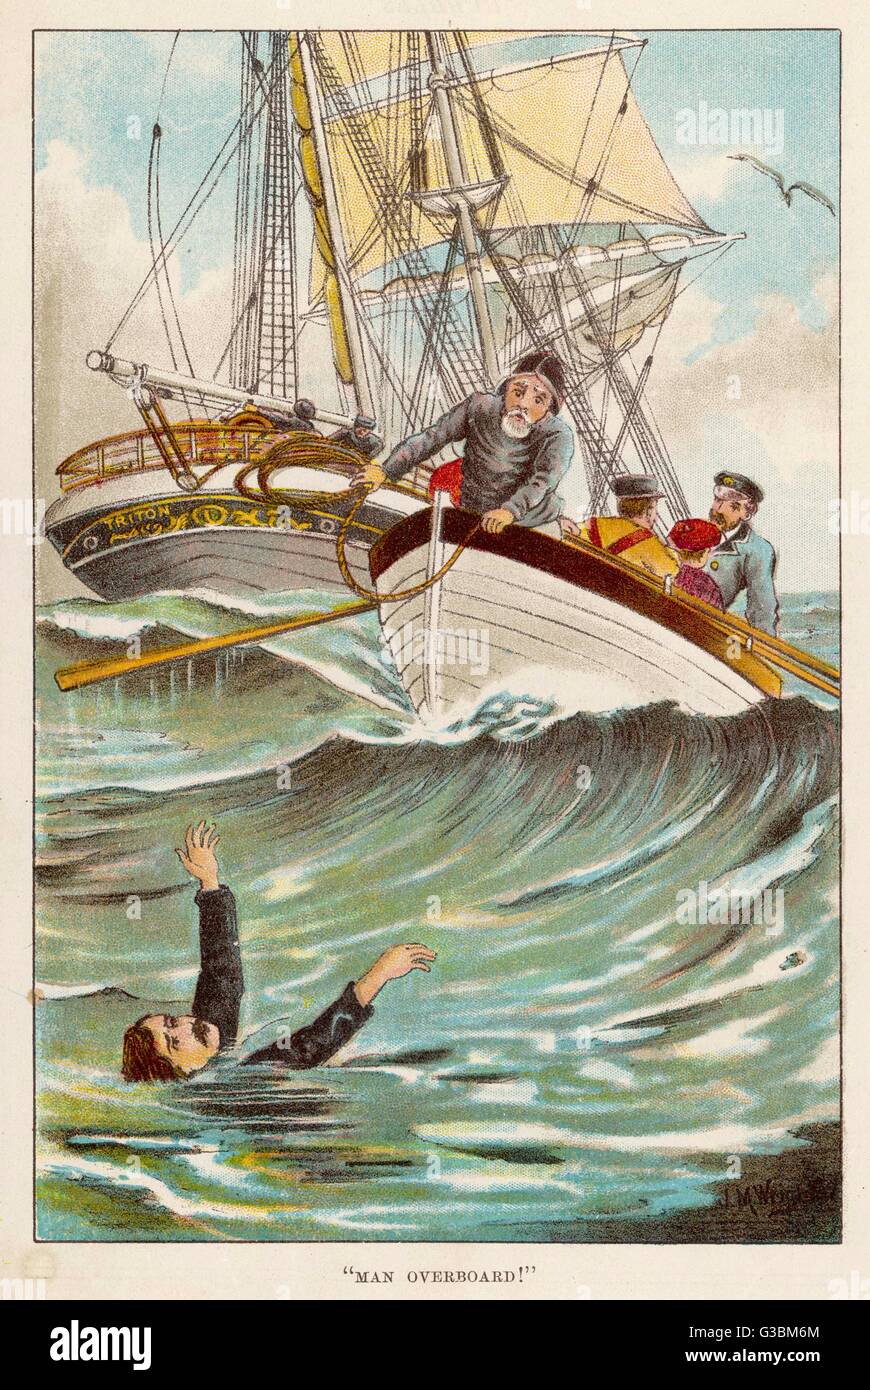 Aus seinem Schiff gefallen, freut sich dieser Mann fröhlich, dass seine Kameraden in der Lage waren, ein Boot zu senken und zu seiner Rettung kommen.     Datum: ca. 1895 Stockfoto